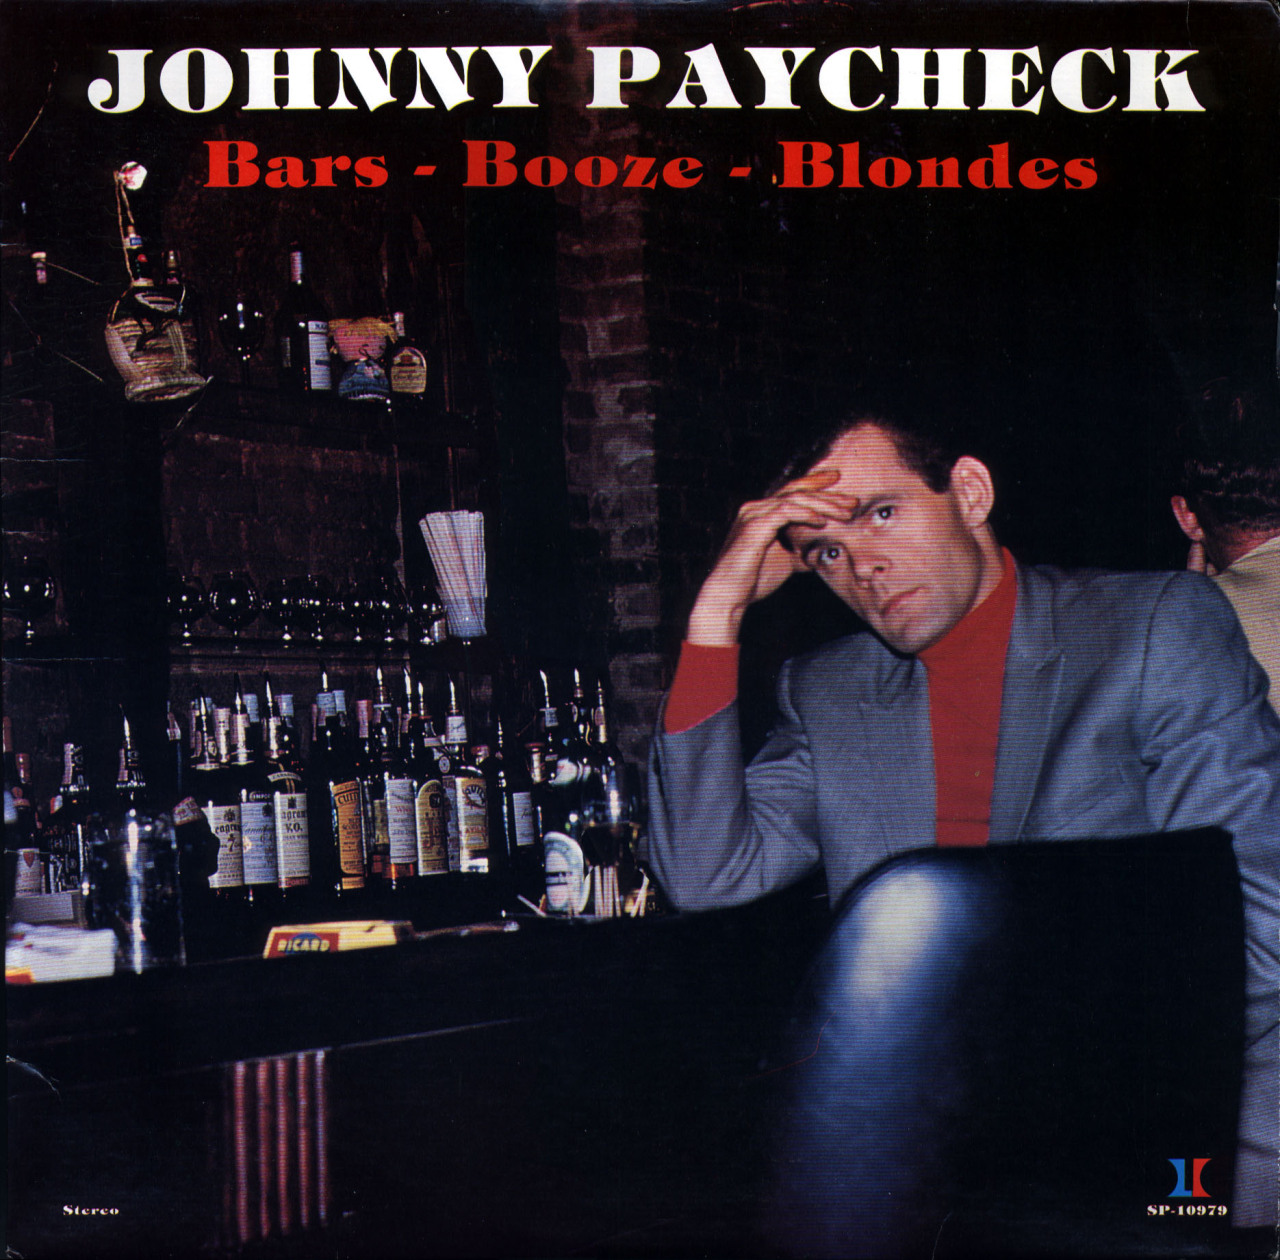 Johnny Paycheck - Bars - Booze - Blonds (1979)